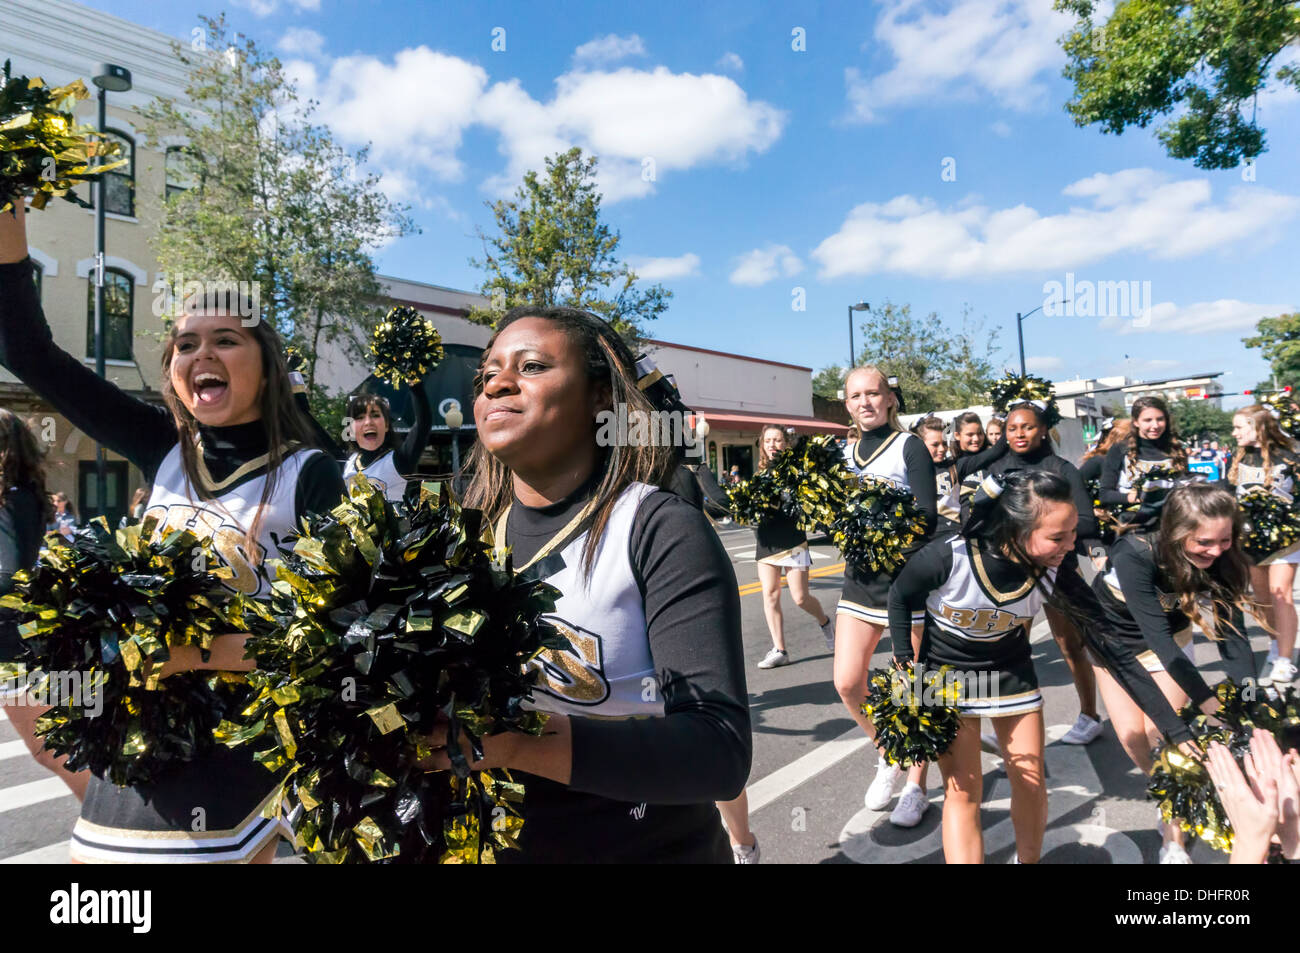 Buchholz High School cheer leader in giallo e nero costumi con oro pom pom, UF 2013 Homecoming Parade. Stati Uniti d'America Foto Stock